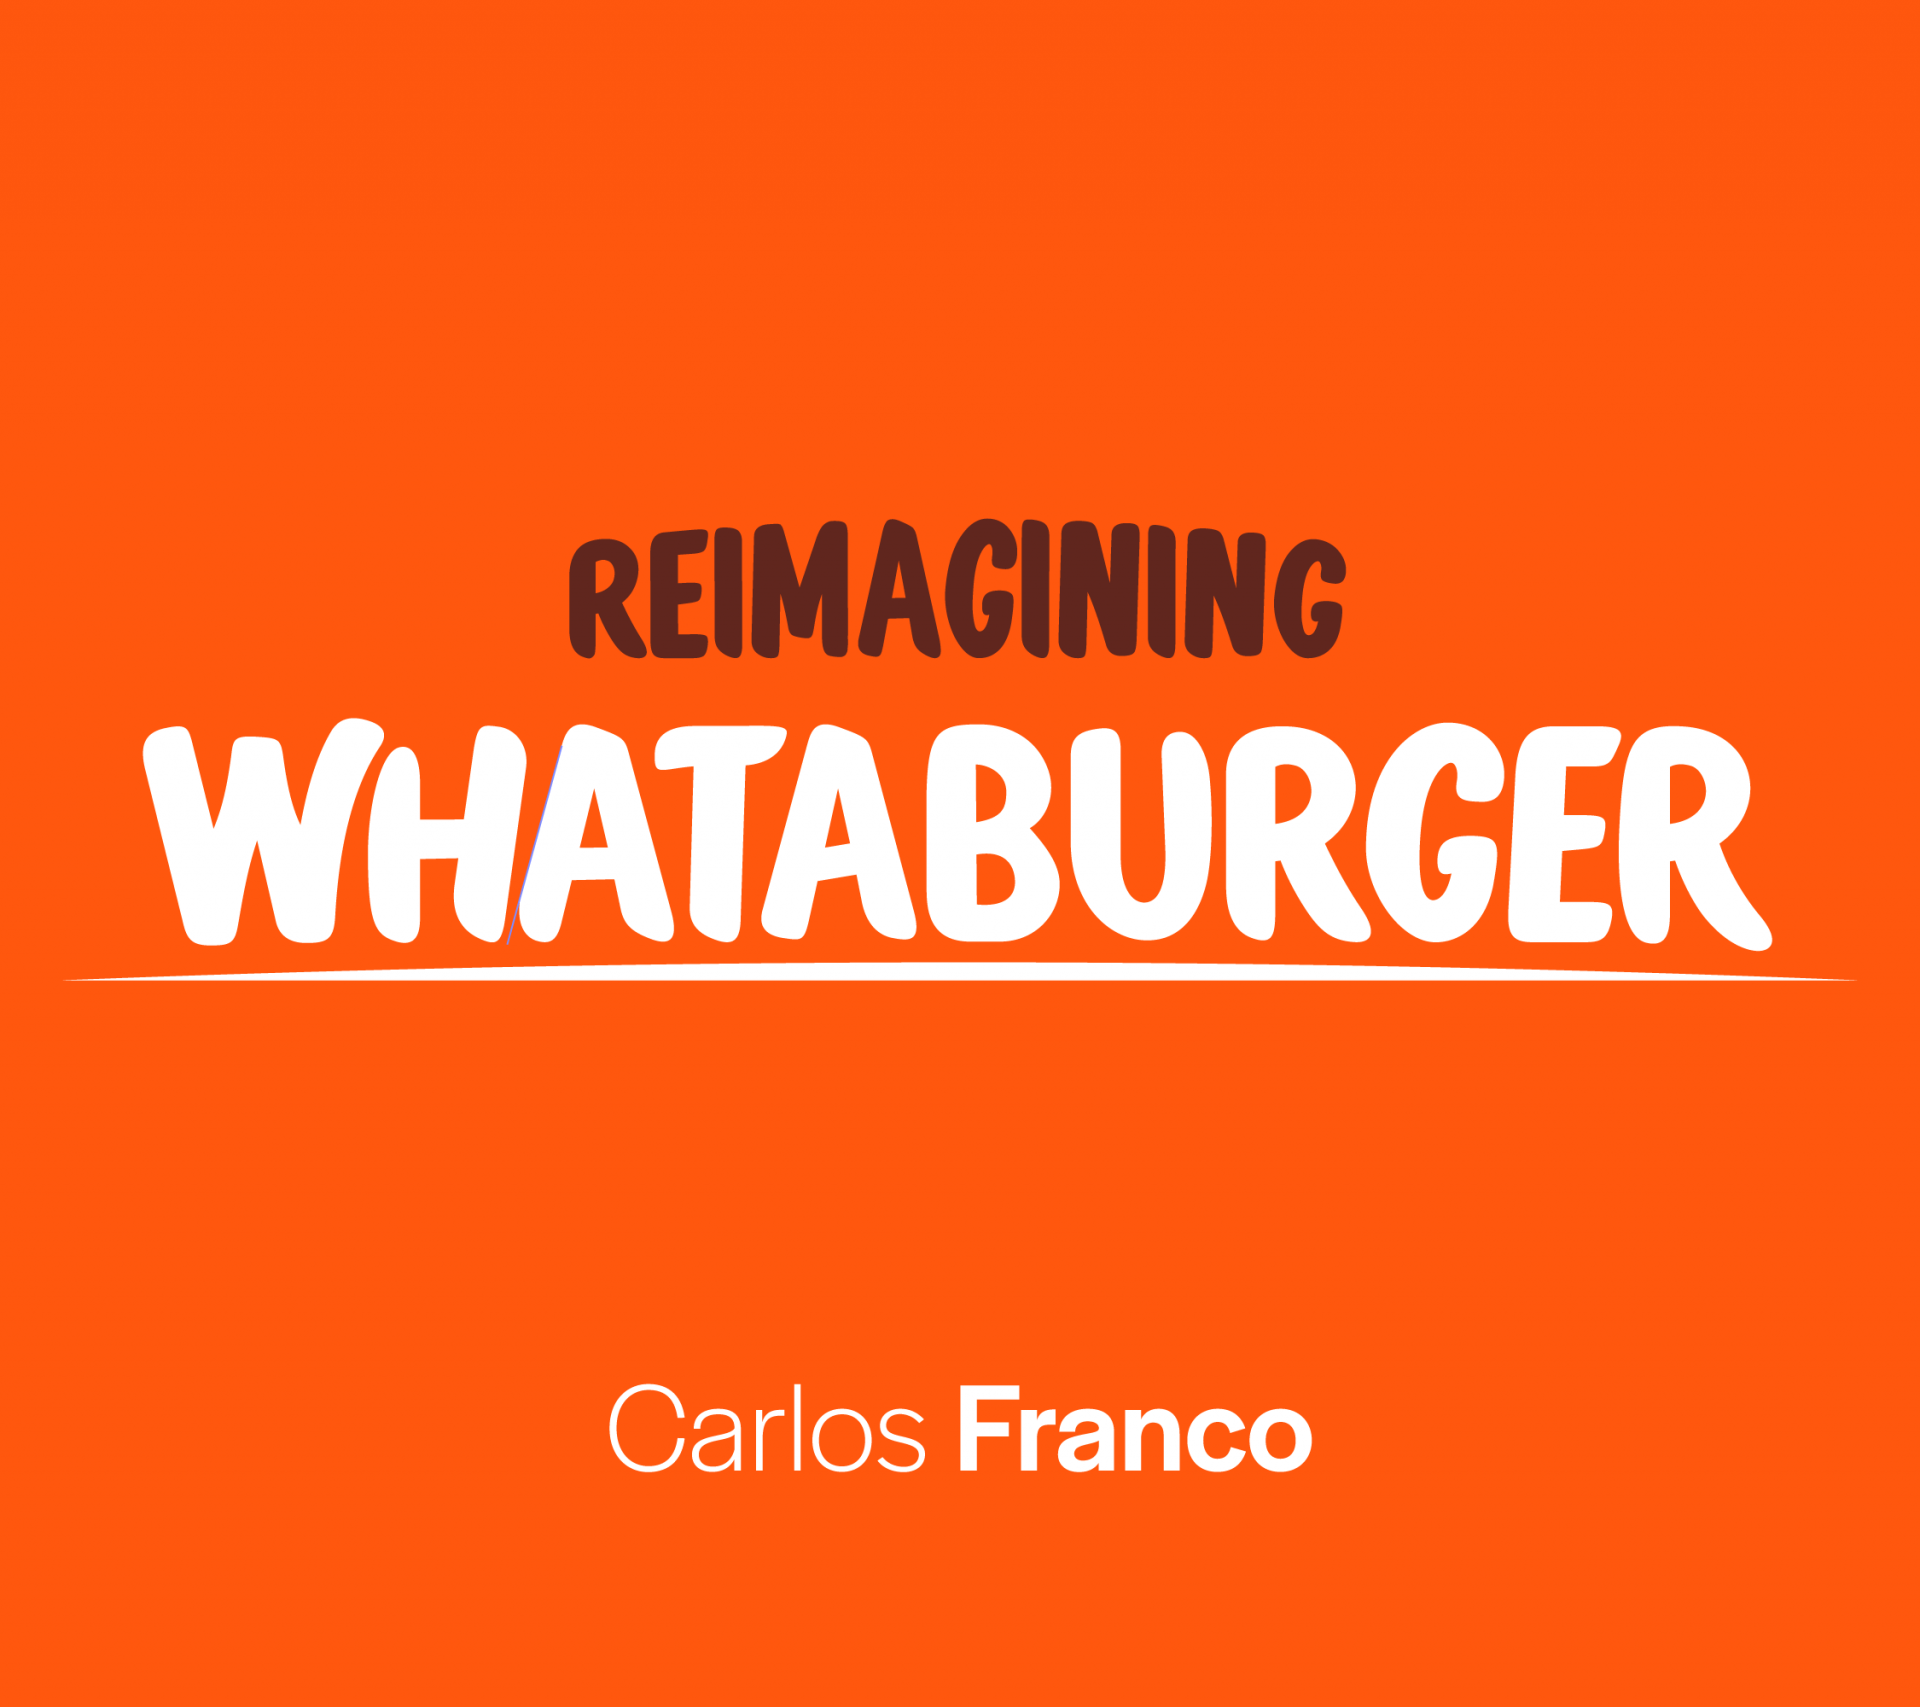 Reimagining Whataburger. Carlos Franco